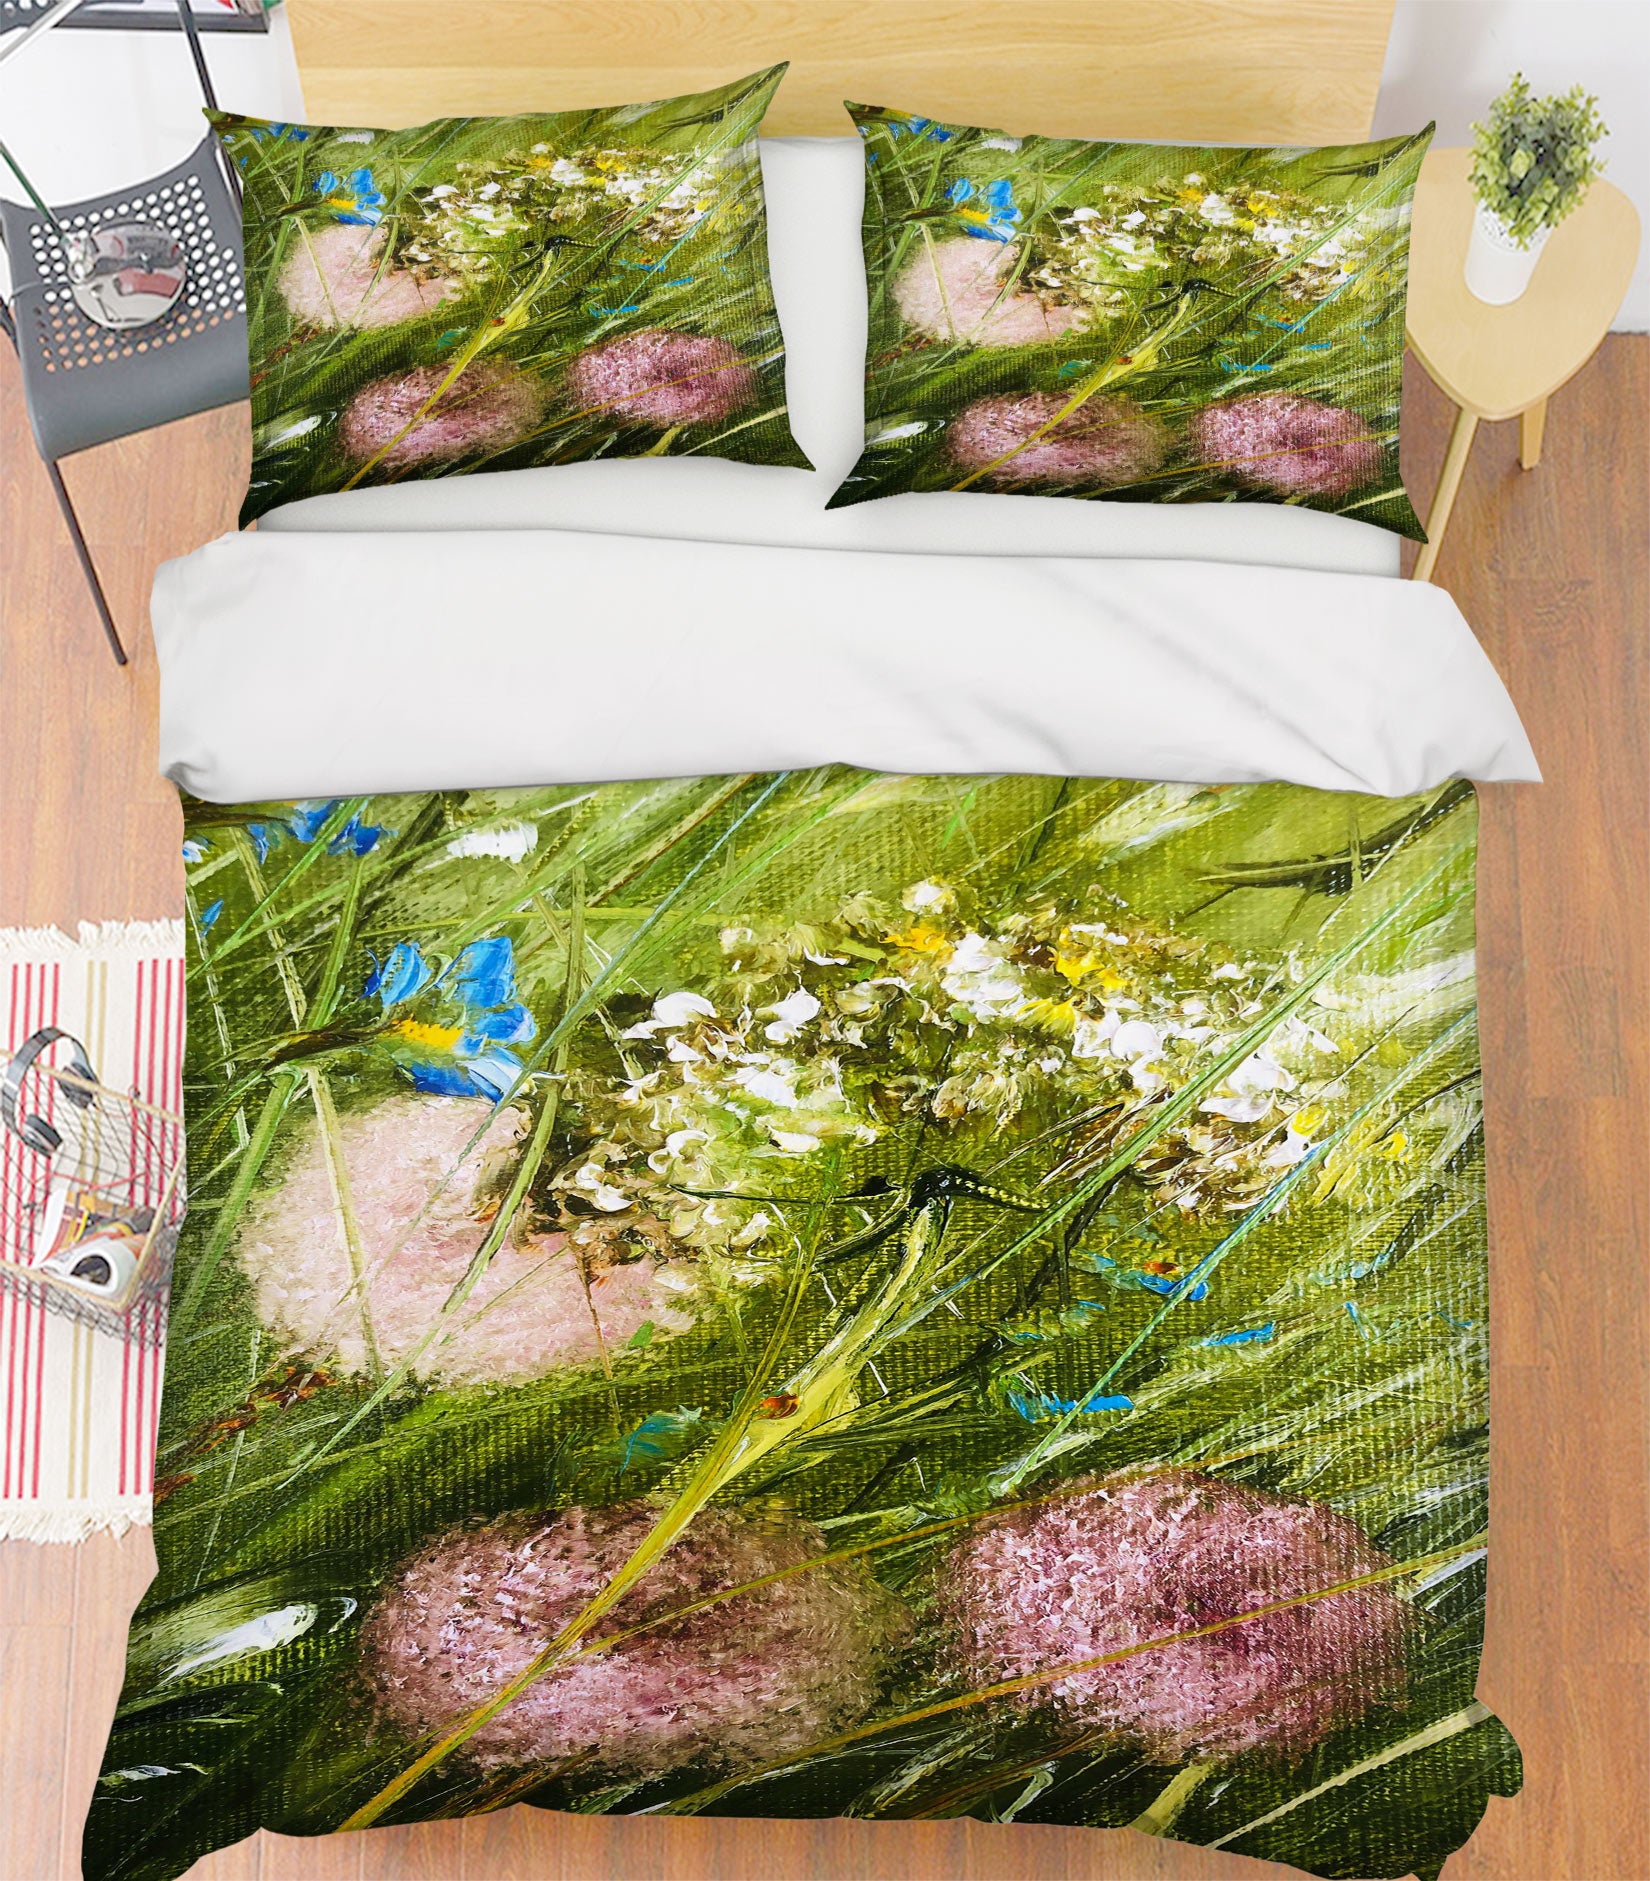 3D Green Grass 503 Skromova Marina Bedding Bed Pillowcases Quilt